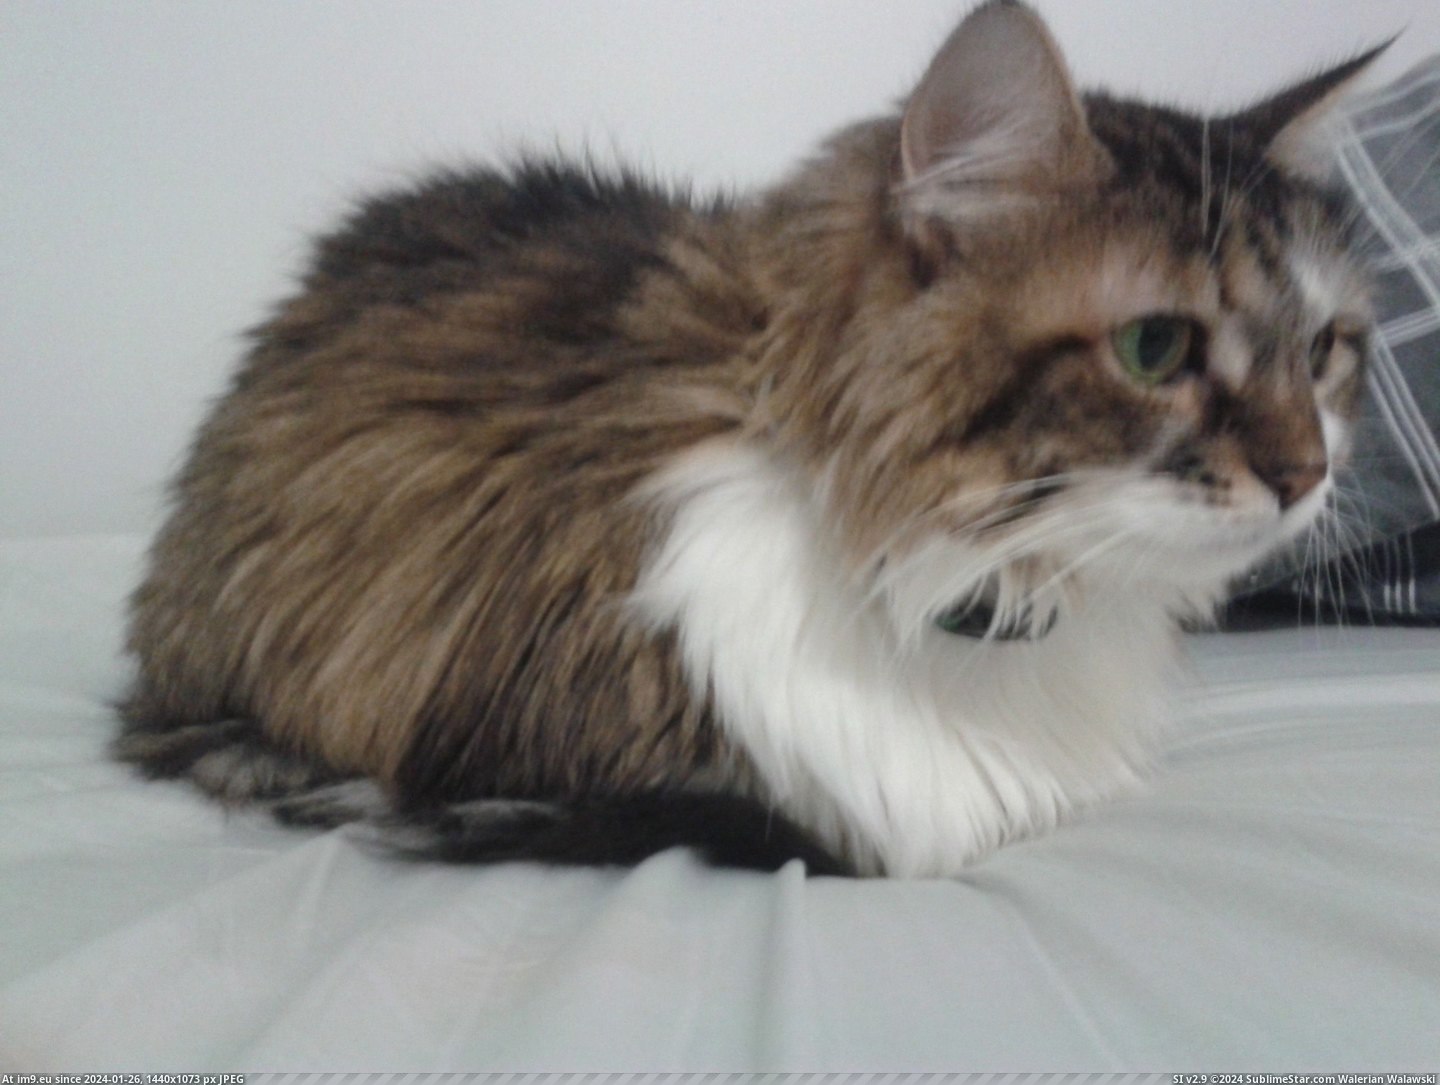 #Cats #Loaf #Cat [Cats] Cat Loaf Pic. (Obraz z album My r/CATS favs))